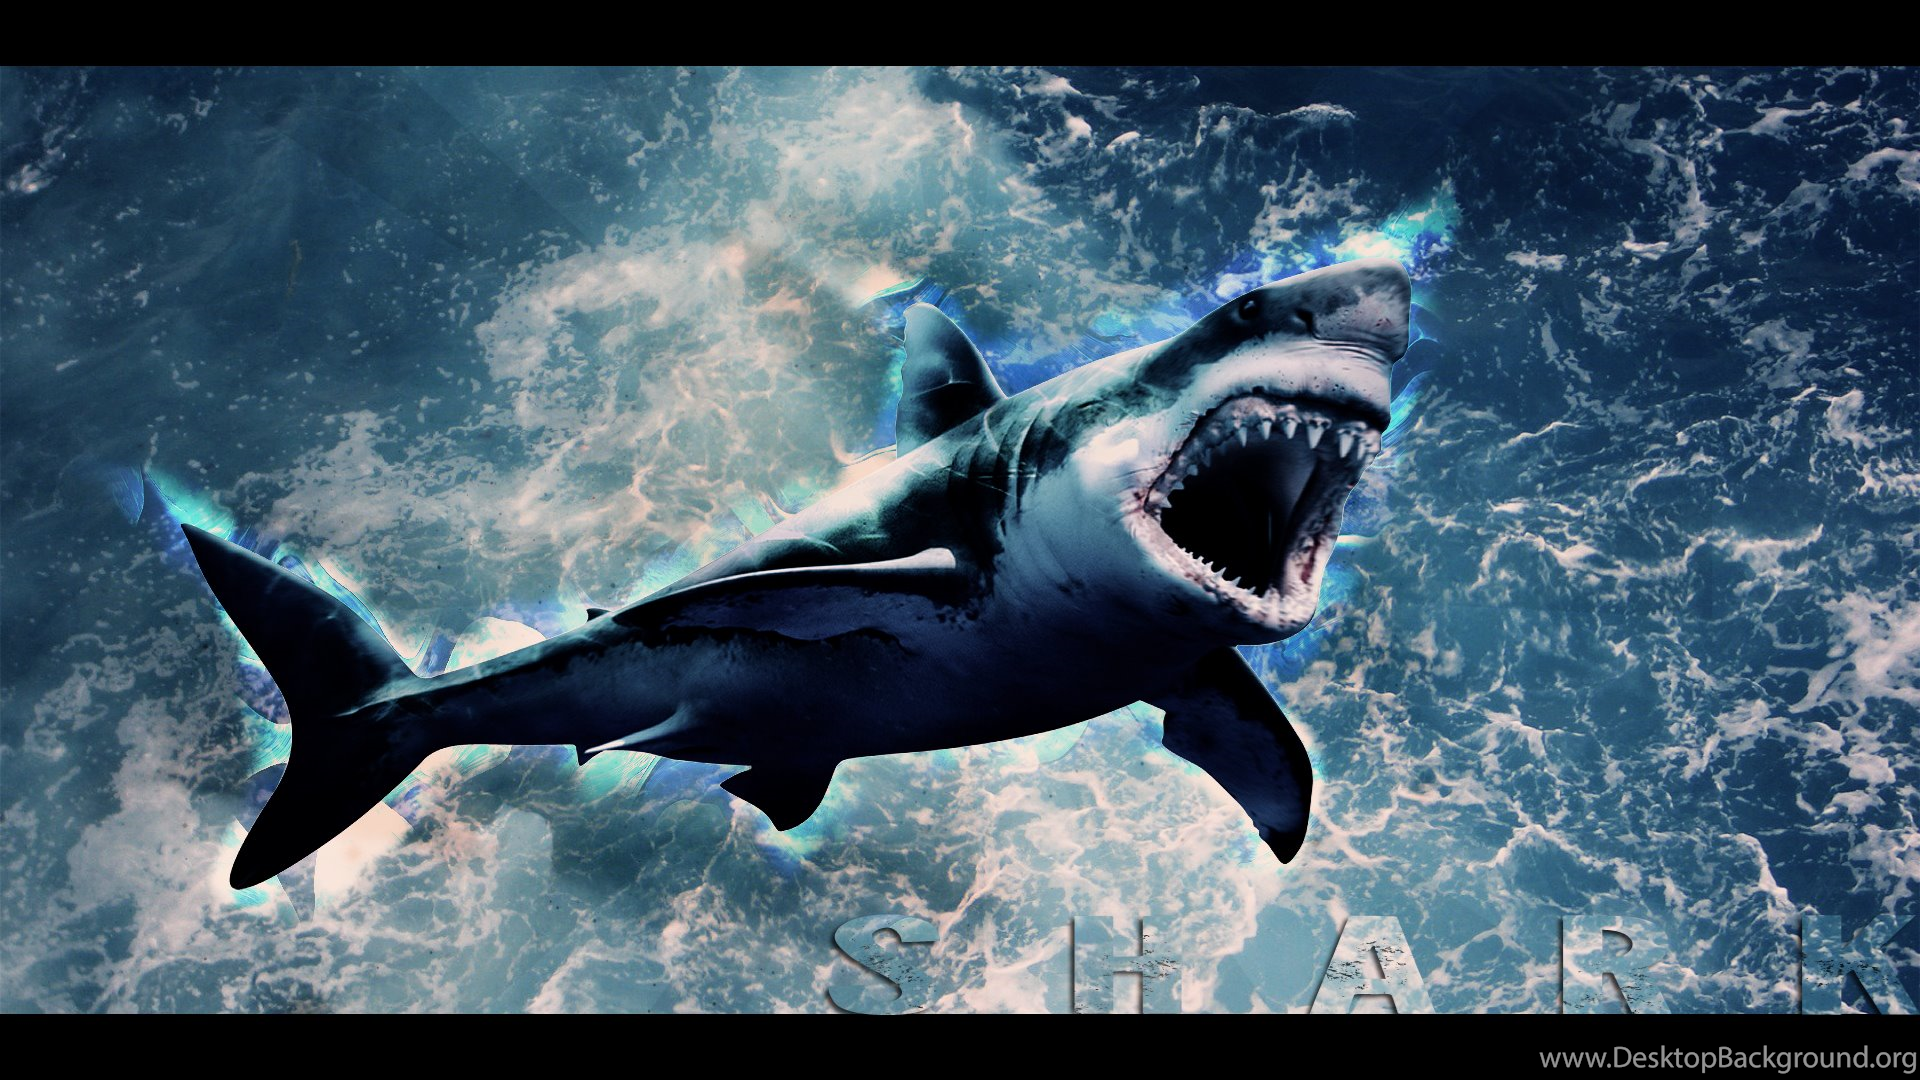 Shark Attack Wallpaper Picture For Desktop Uncalke.com Desktop Background